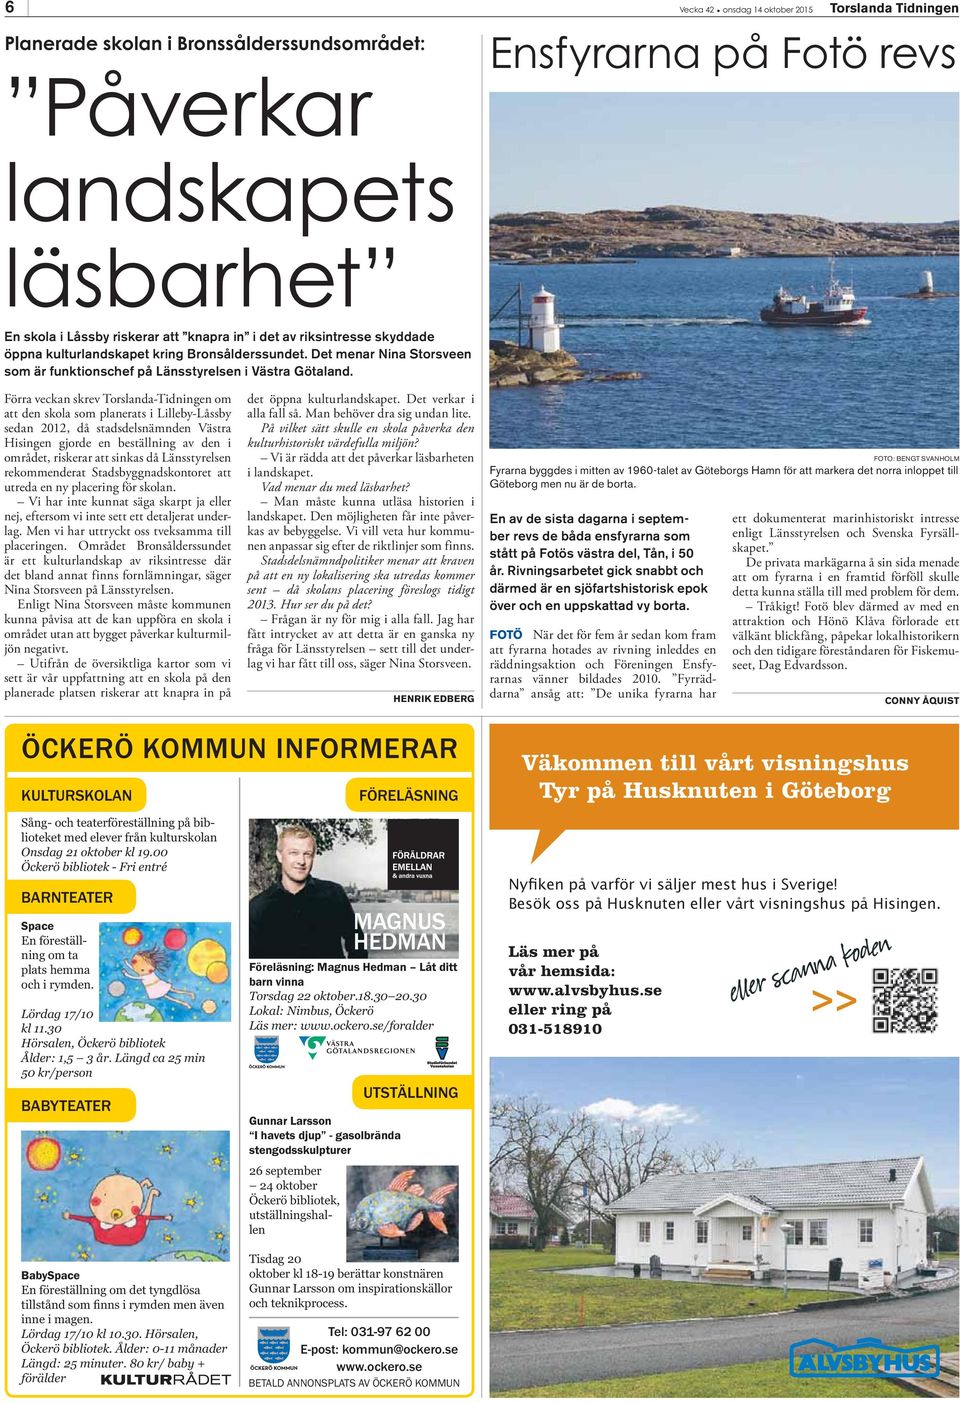 Förra veckan skrev Torslanda-Tidningen om att den skola som planerats i Lilleby-Låssby sedan 2012, då stadsdelsnämnden Västra Hisingen gjorde en beställning av den i området, riskerar att sinkas då